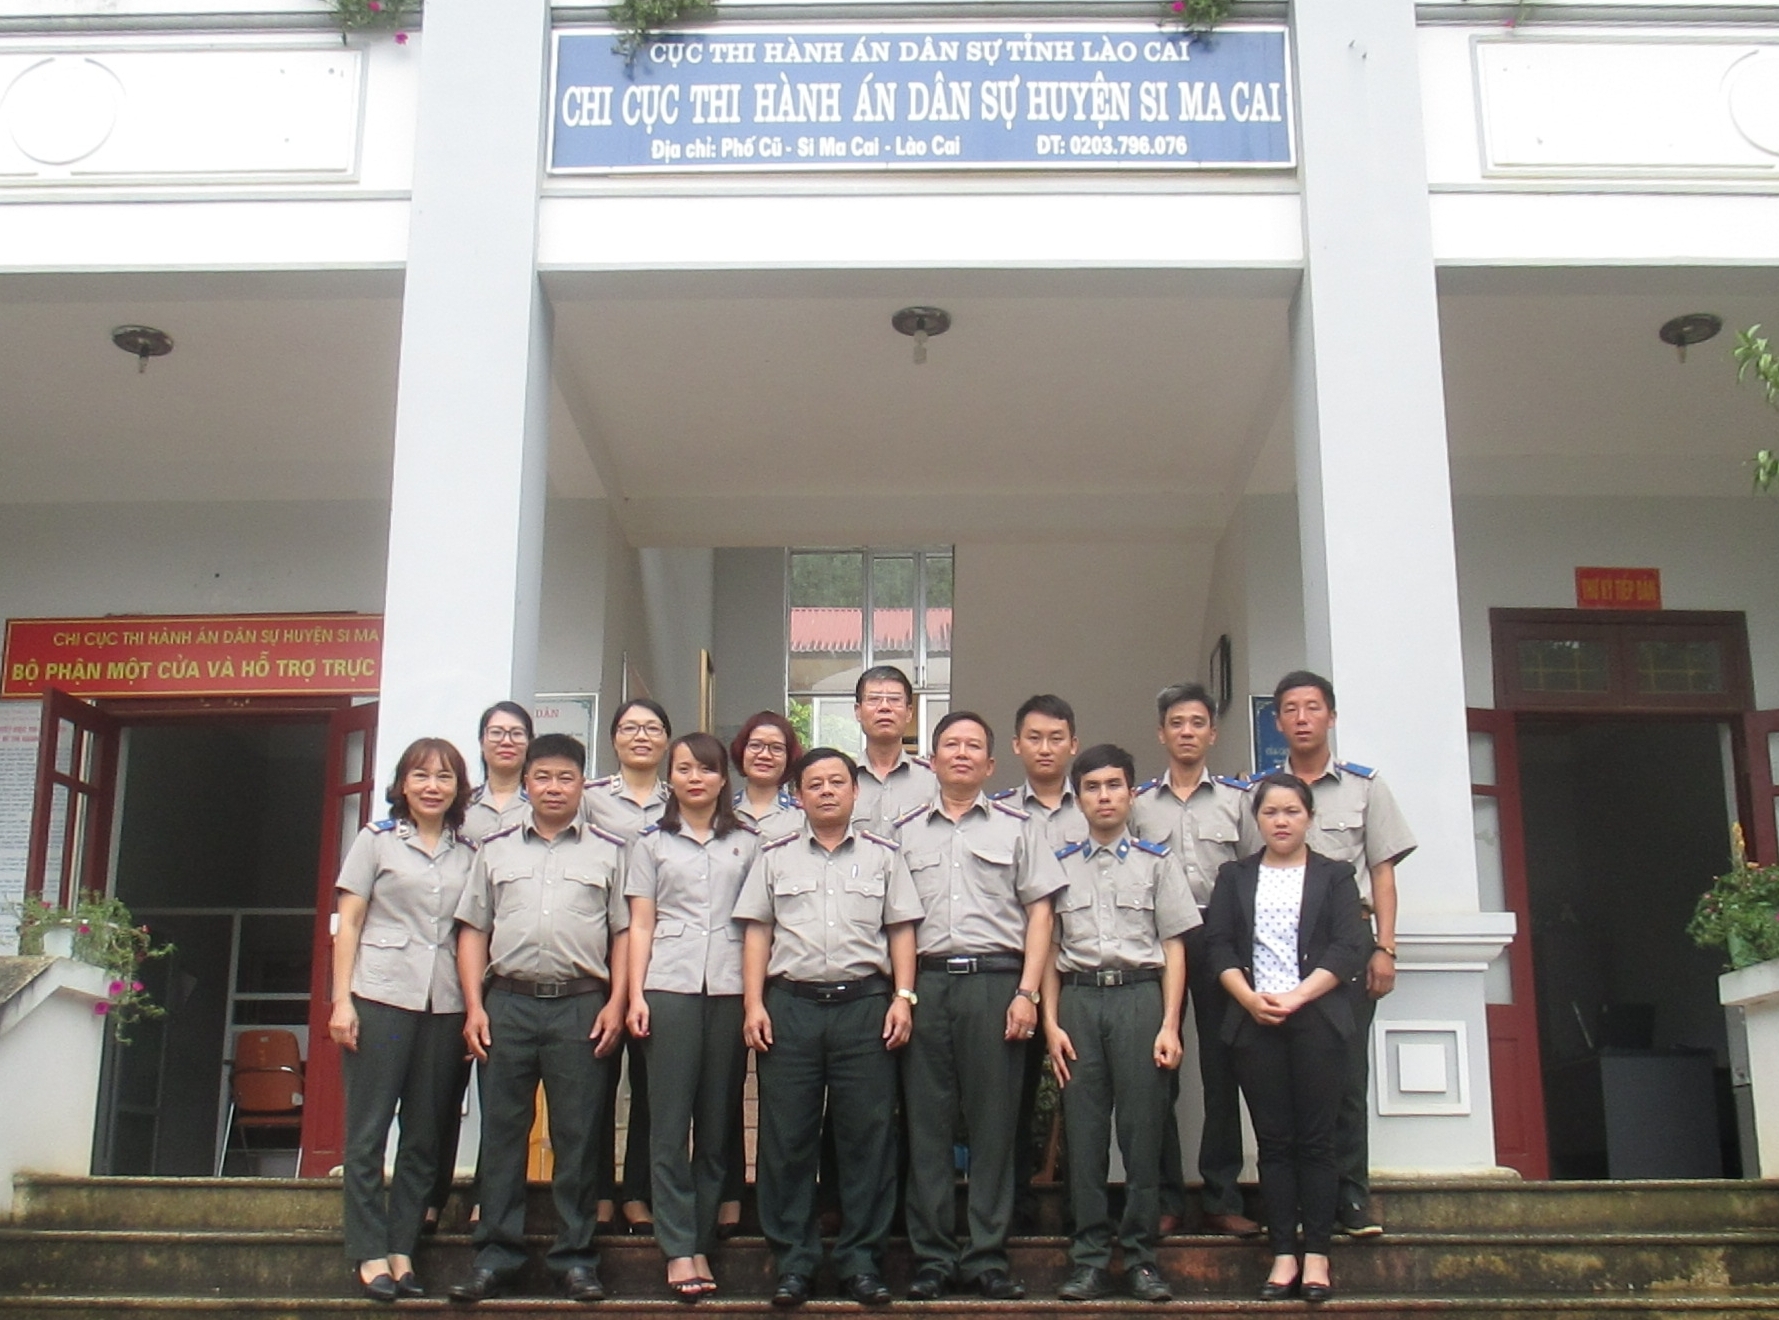 Đoàn công tác Cục Thi hành án dân sự tỉnh Lào Cai làm việc với Lãnh đạo huyện và Chi cục Thi hành án dân sự huyện Si Ma Cai